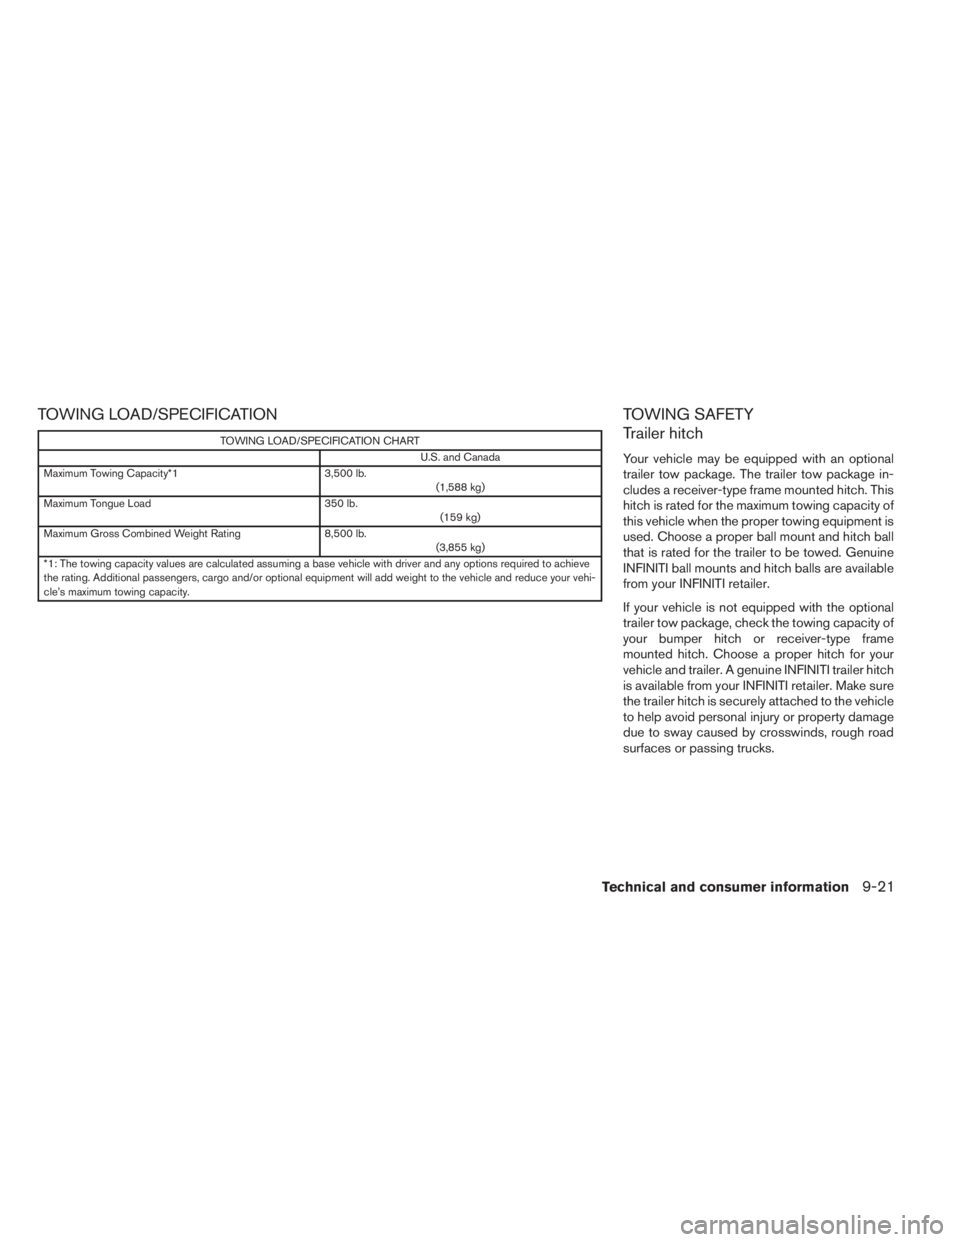 INFINITI JX 2013  Owners Manual TOWING LOAD/SPECIFICATION
TOWING LOAD/SPECIFICATION CHARTU.S. and Canada
Maximum Towing Capacity*1 3,500 lb.
(1,588 kg)
Maximum Tongue Load 350 lb.
(159 kg)
Maximum Gross Combined Weight Rating 8,500 